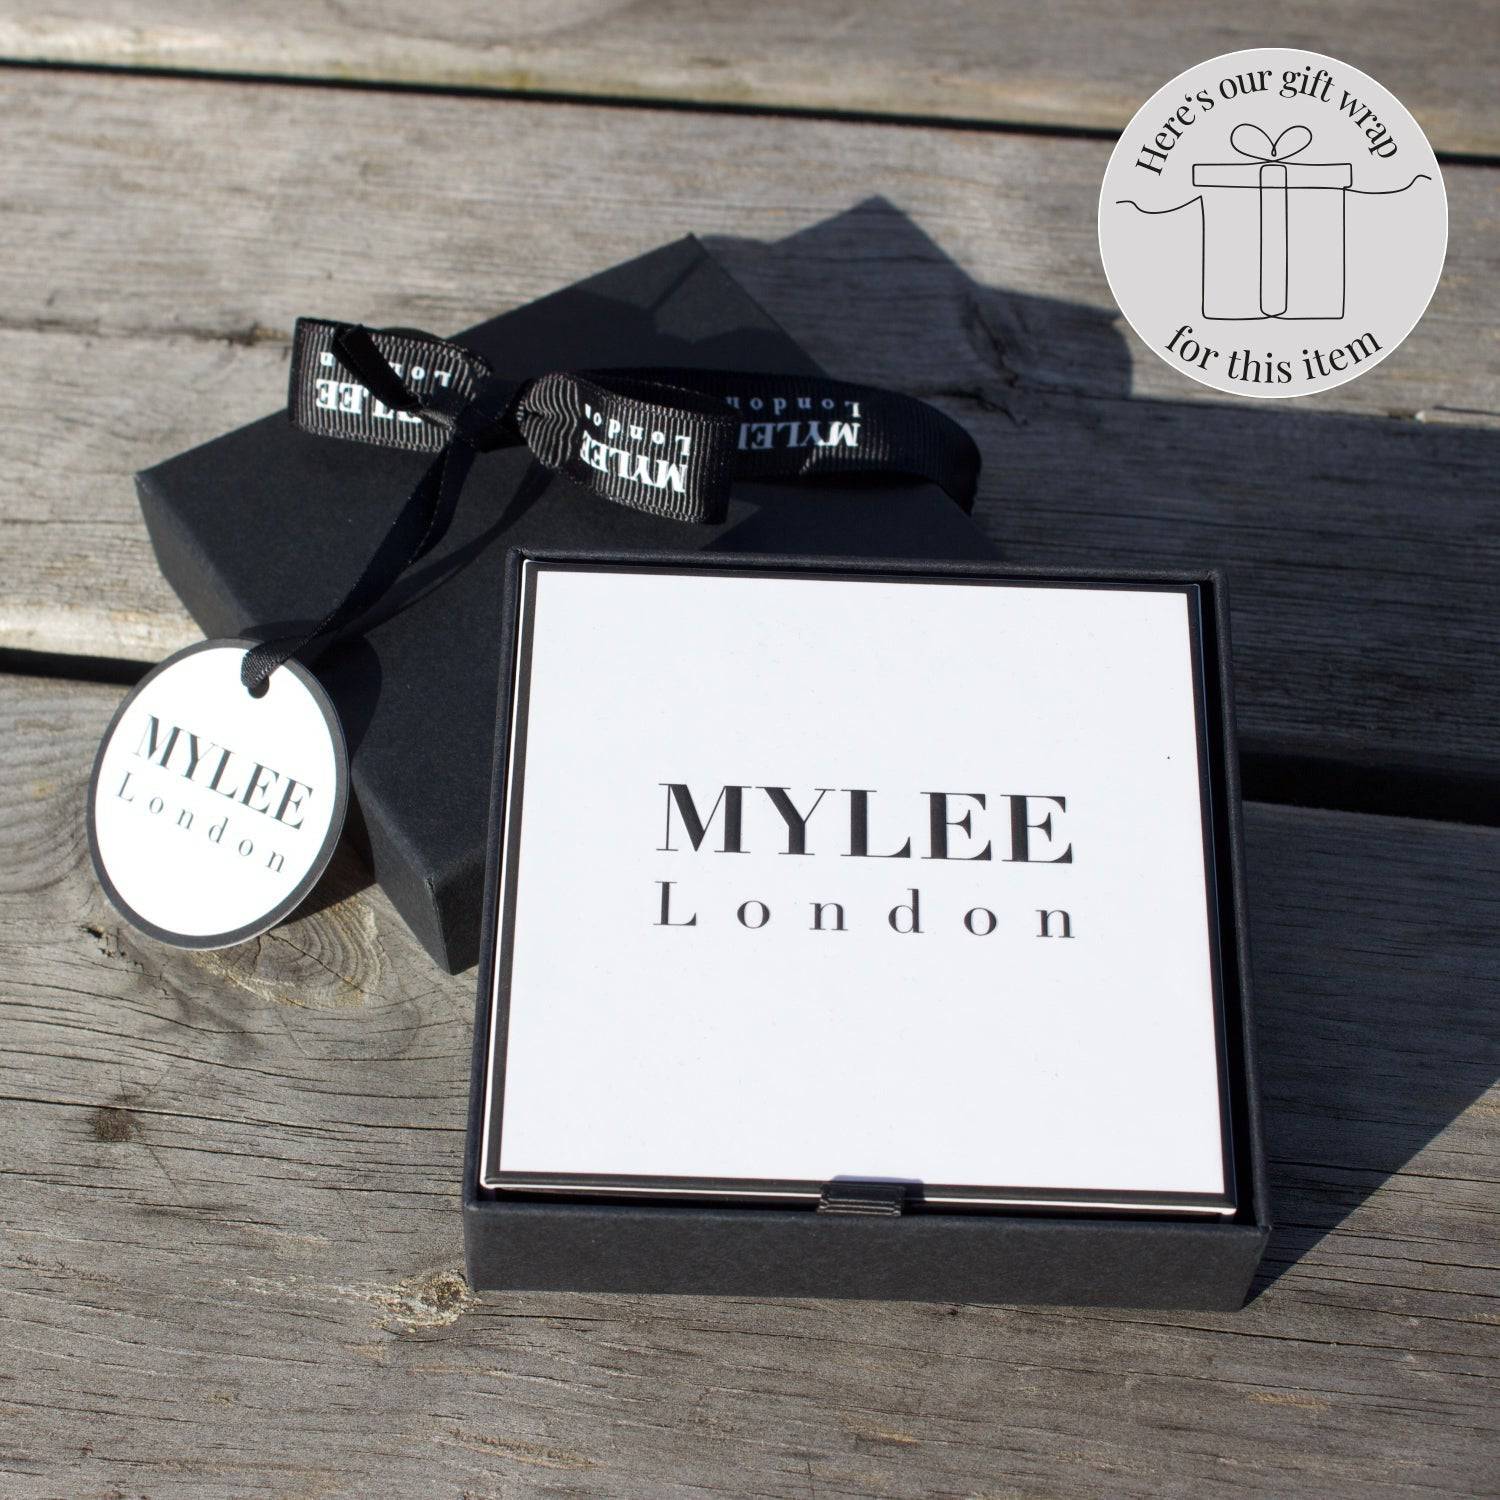 Australian Shepherd Silhouette Silver Ball Bracelet - Personalised - MYLEE London